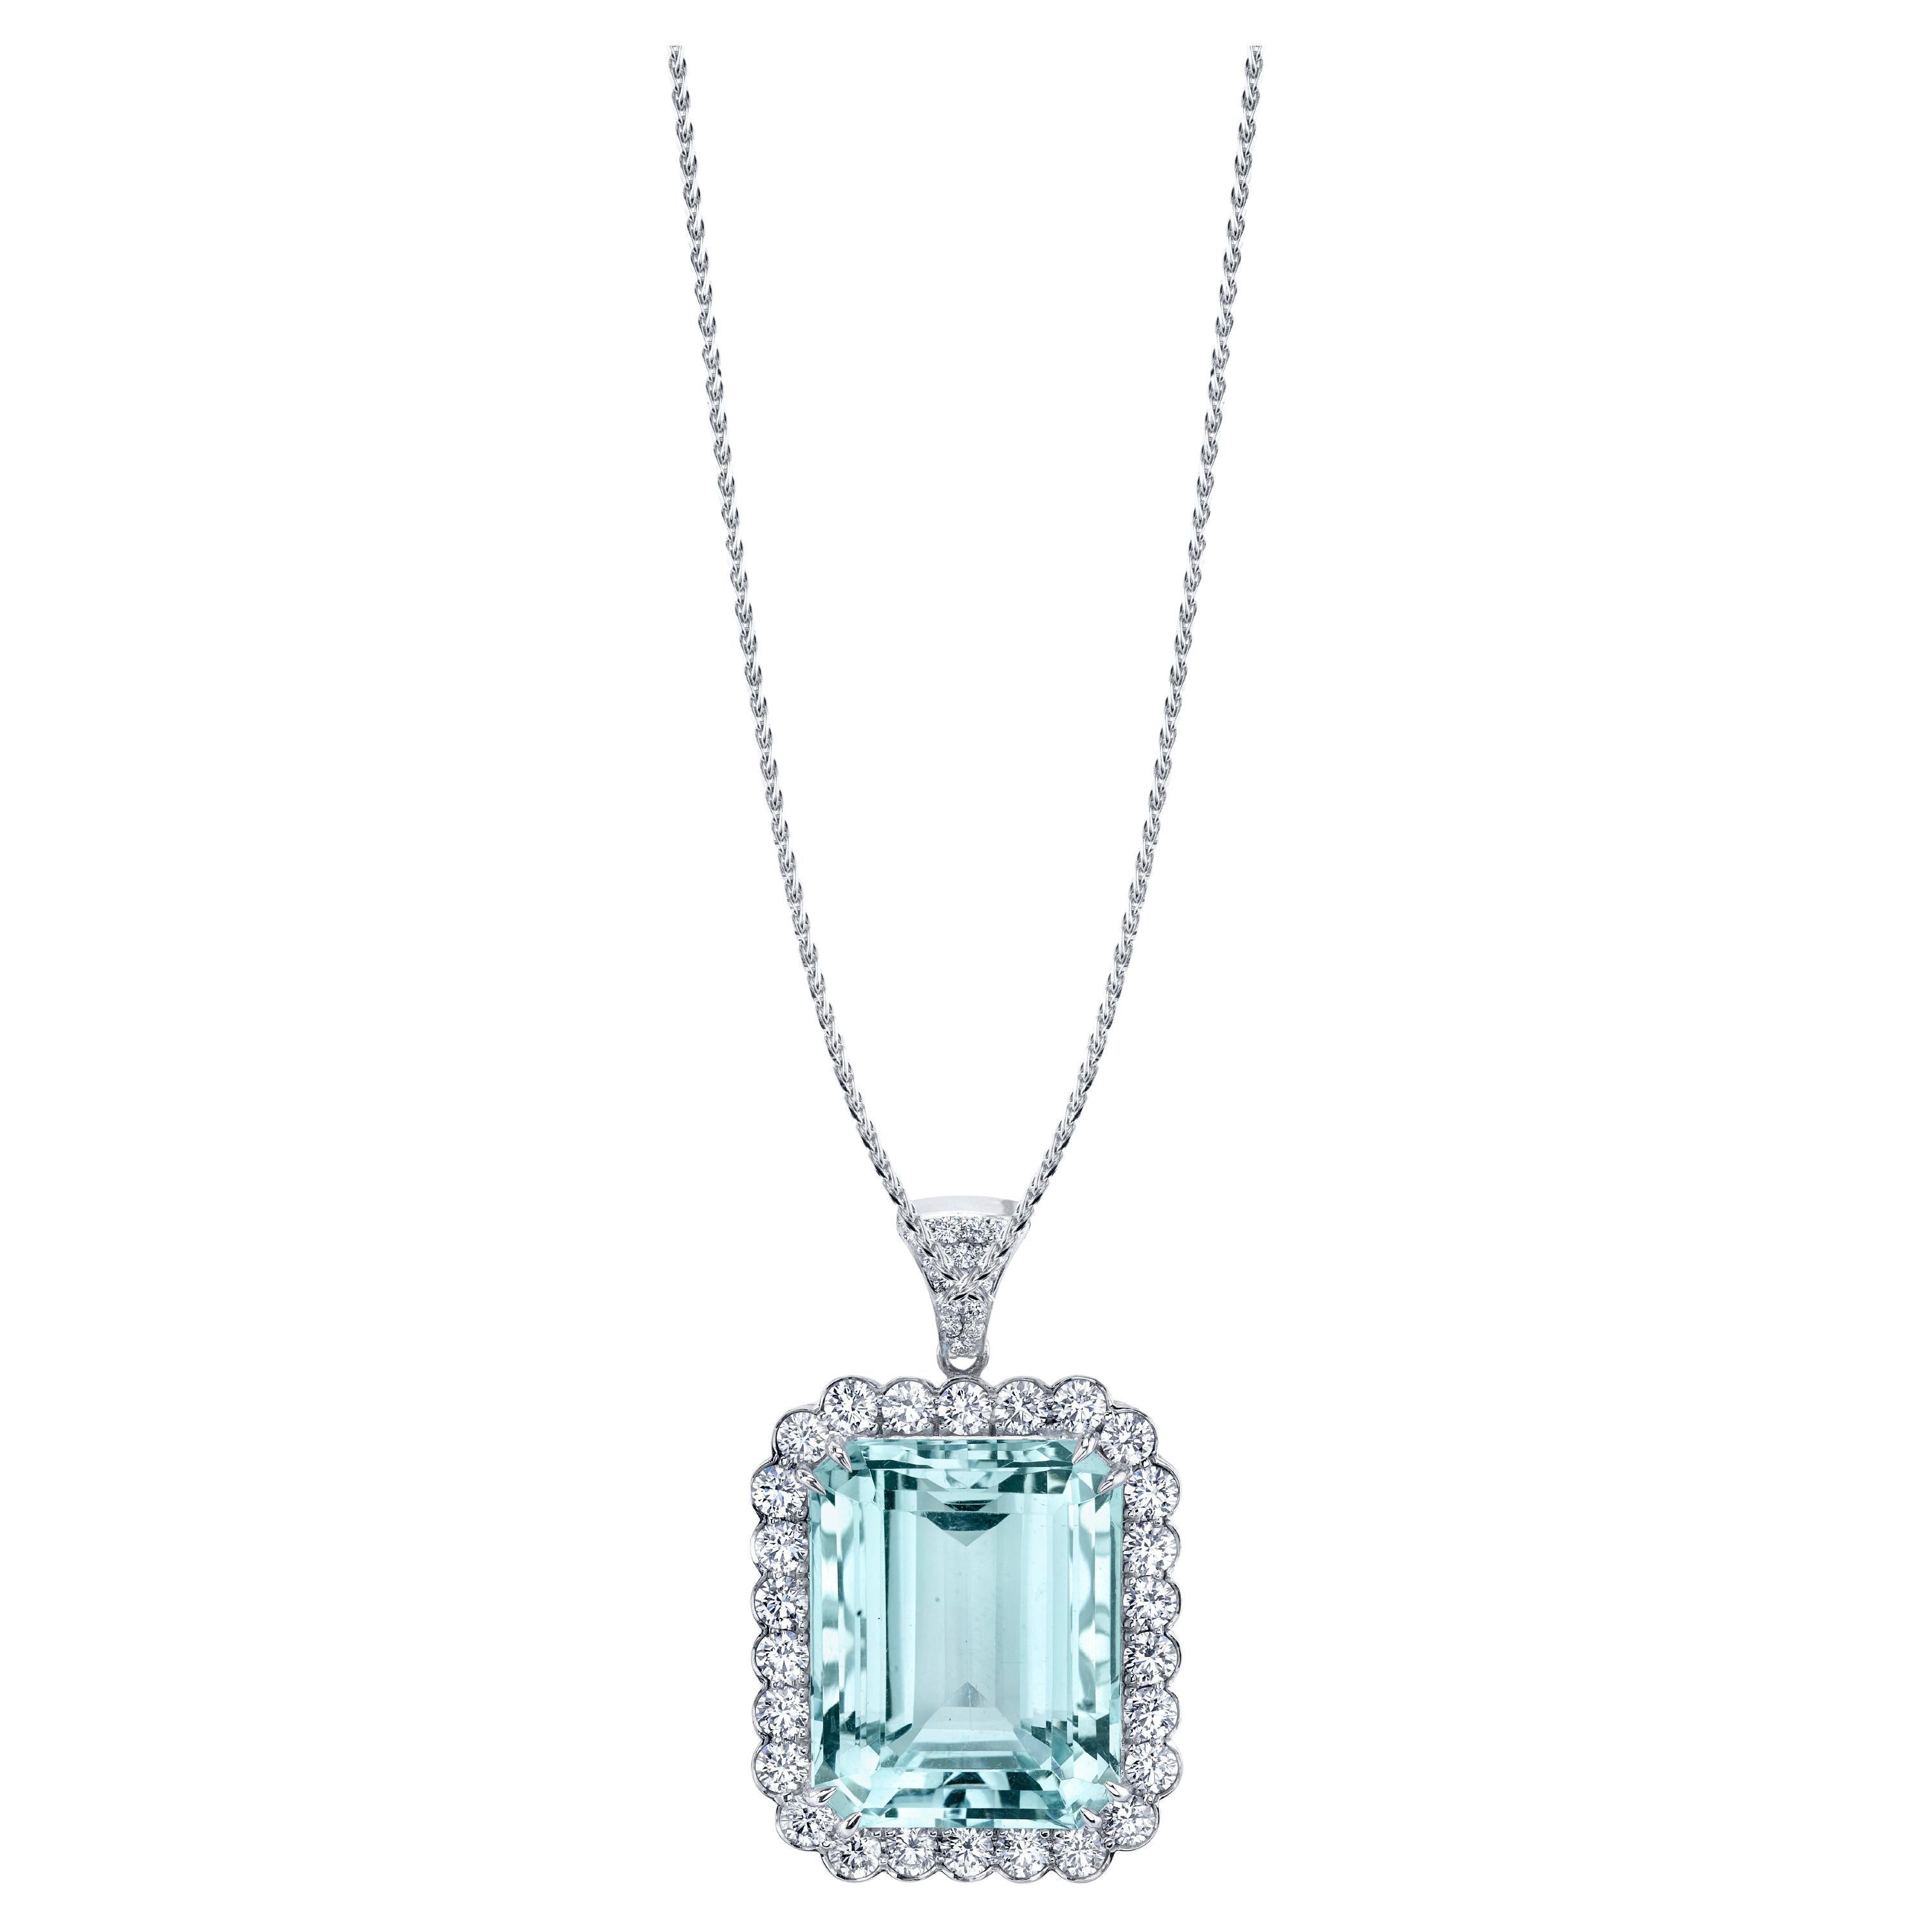 32.29 Carat Emerald Cut Aquamarine and Diamond Pendant